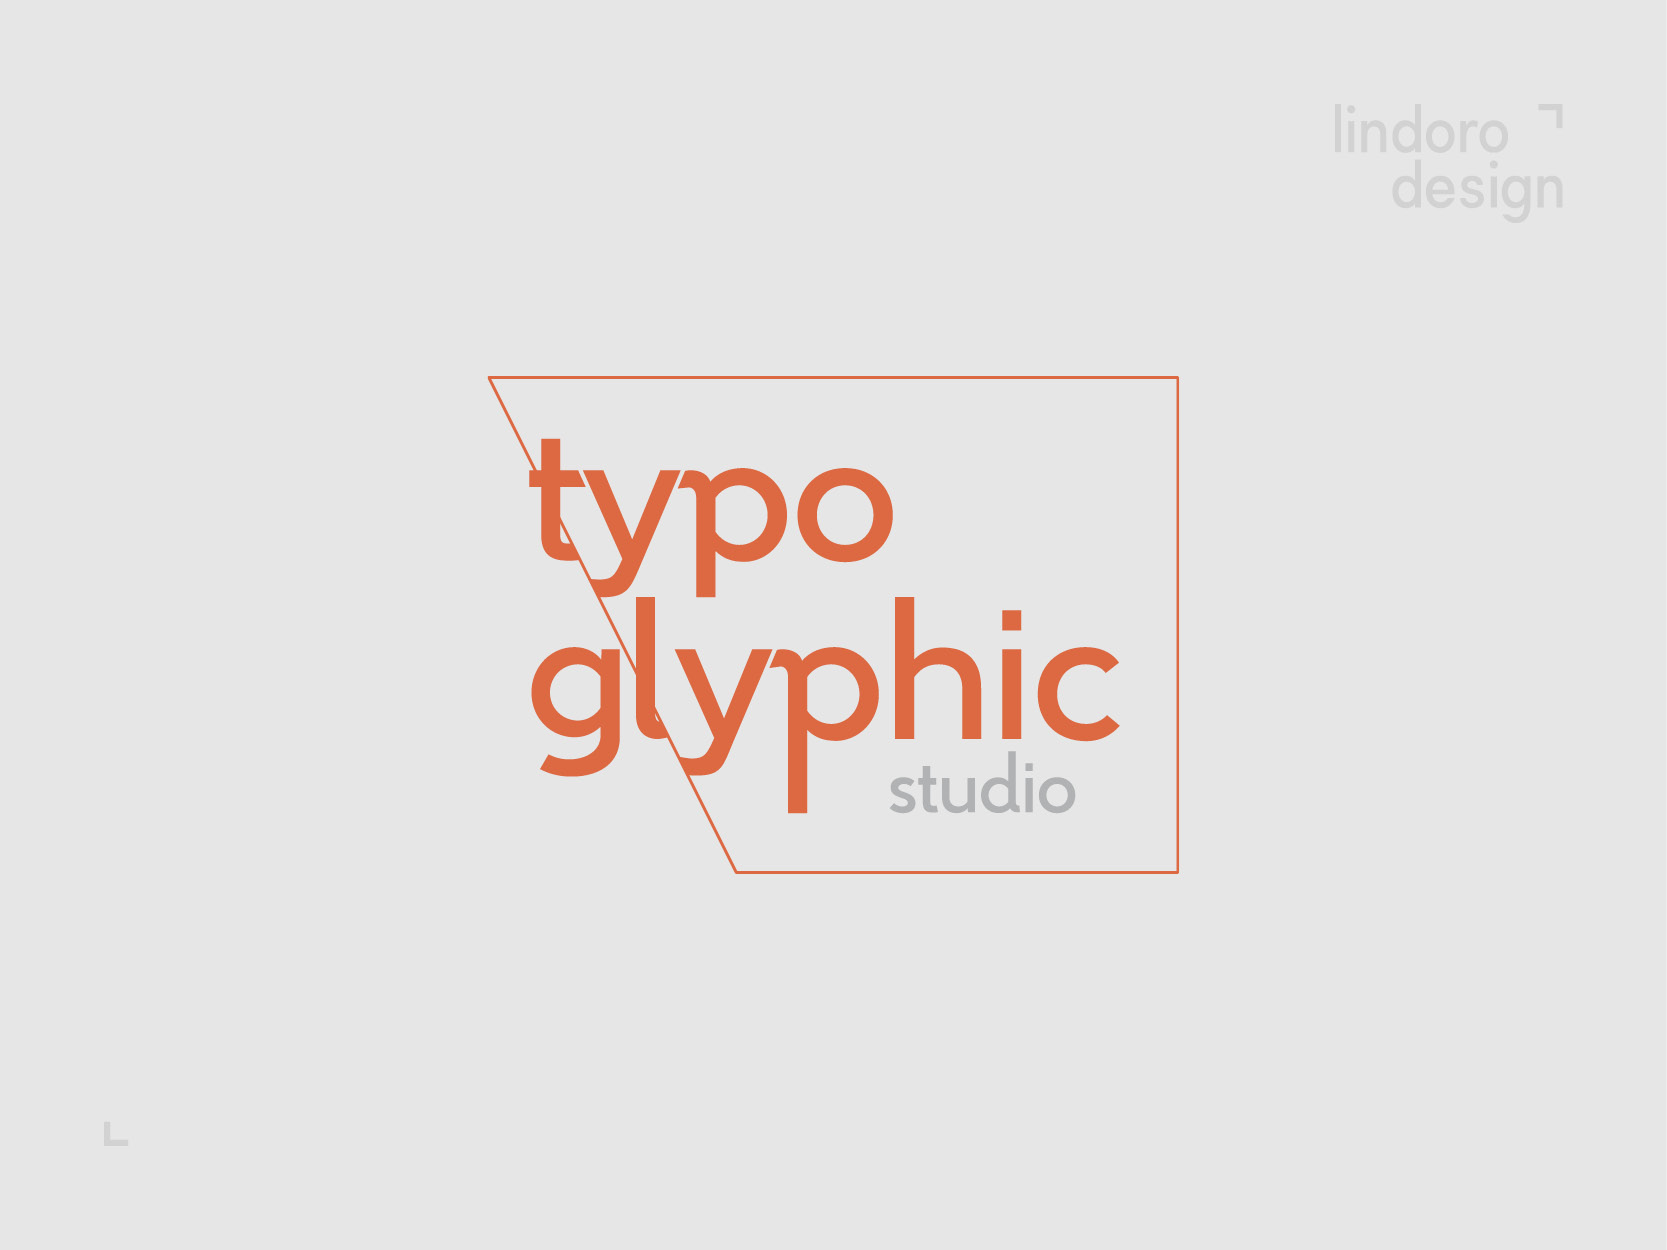 Typo Glyphic Studio